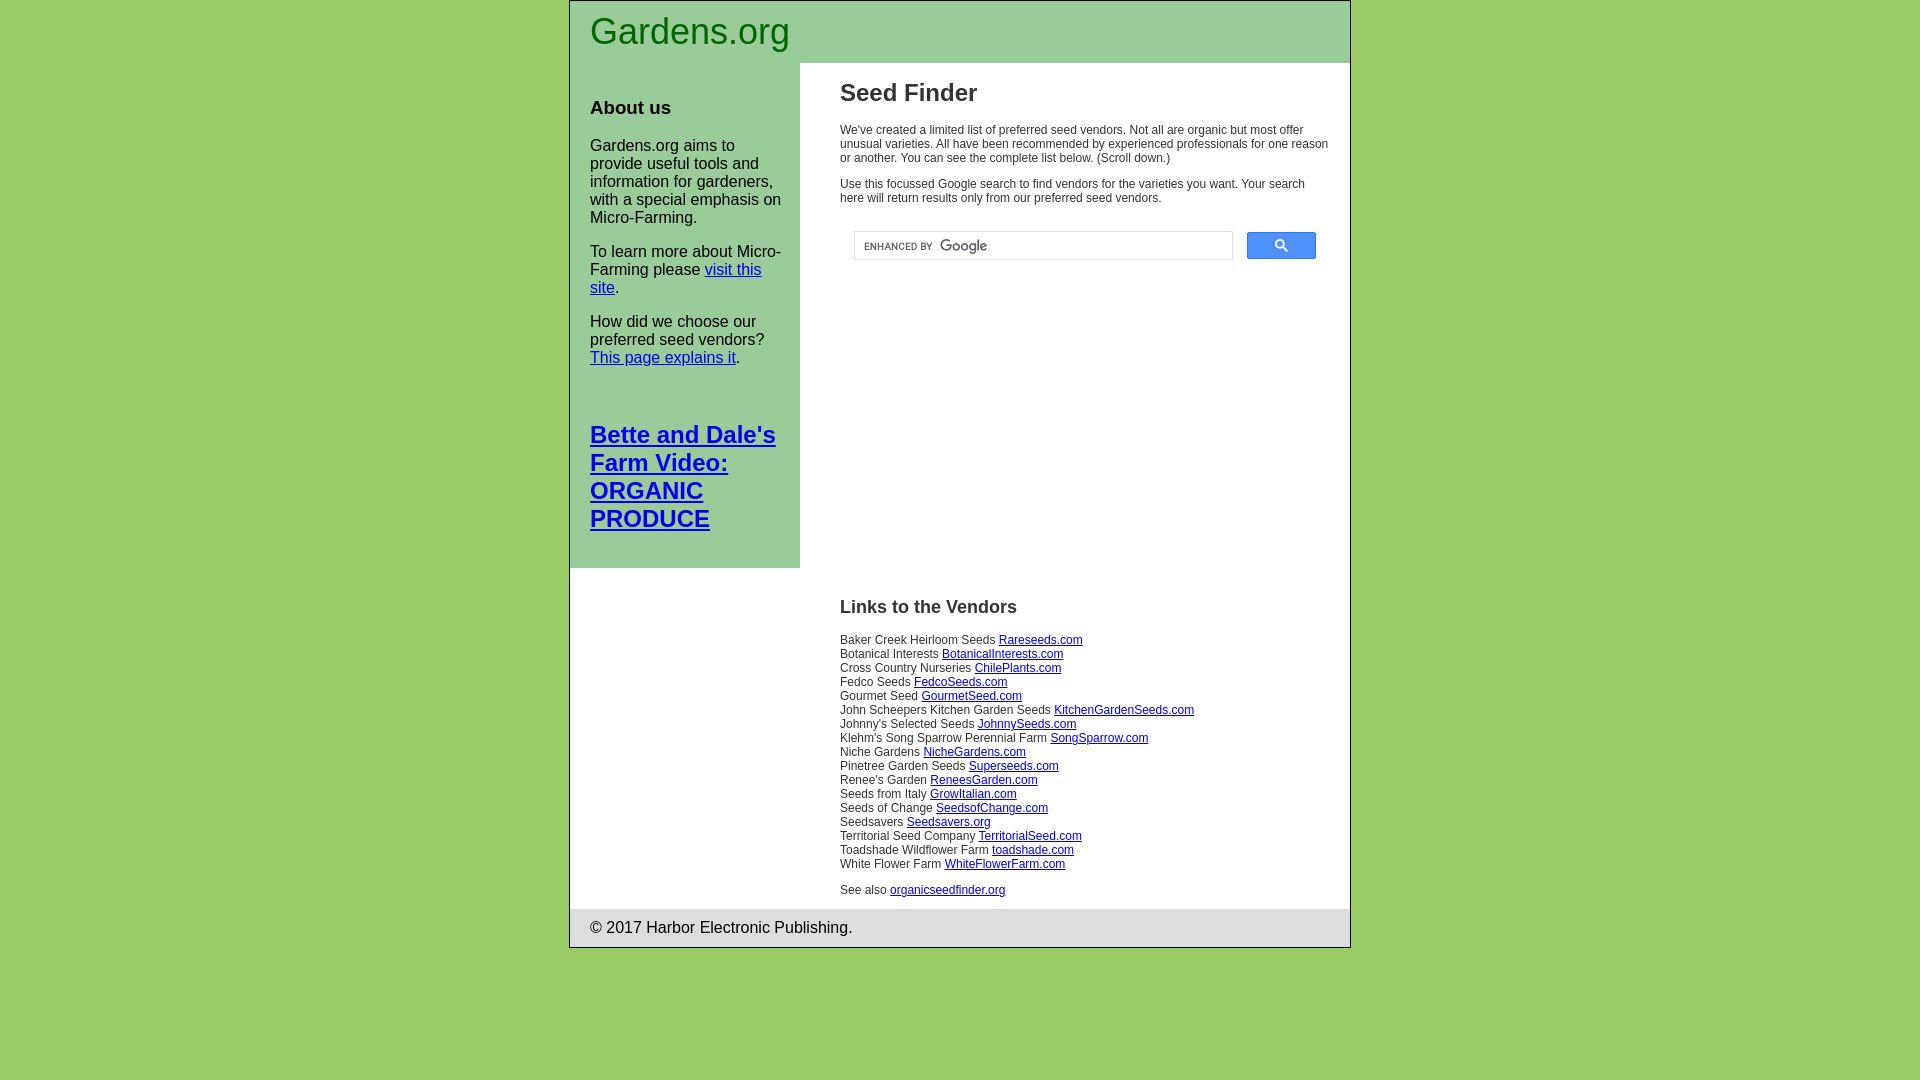 Stato del sito web gardens.org è   ONLINE